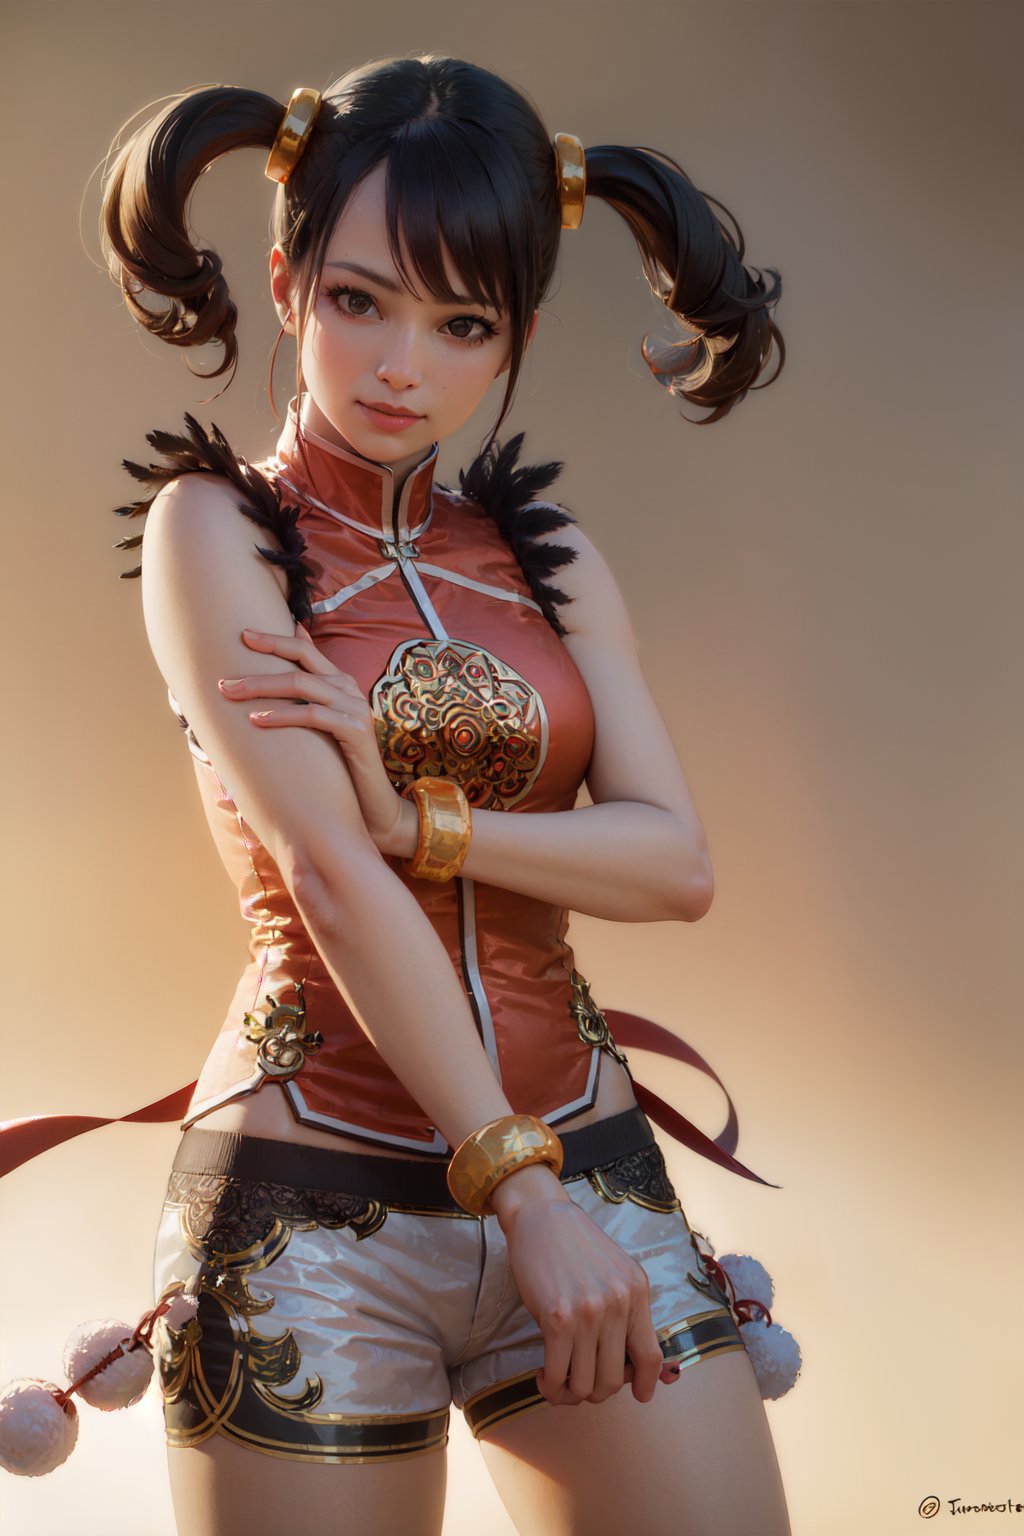 Ling Xiaoyu | Tekken image by justTNP